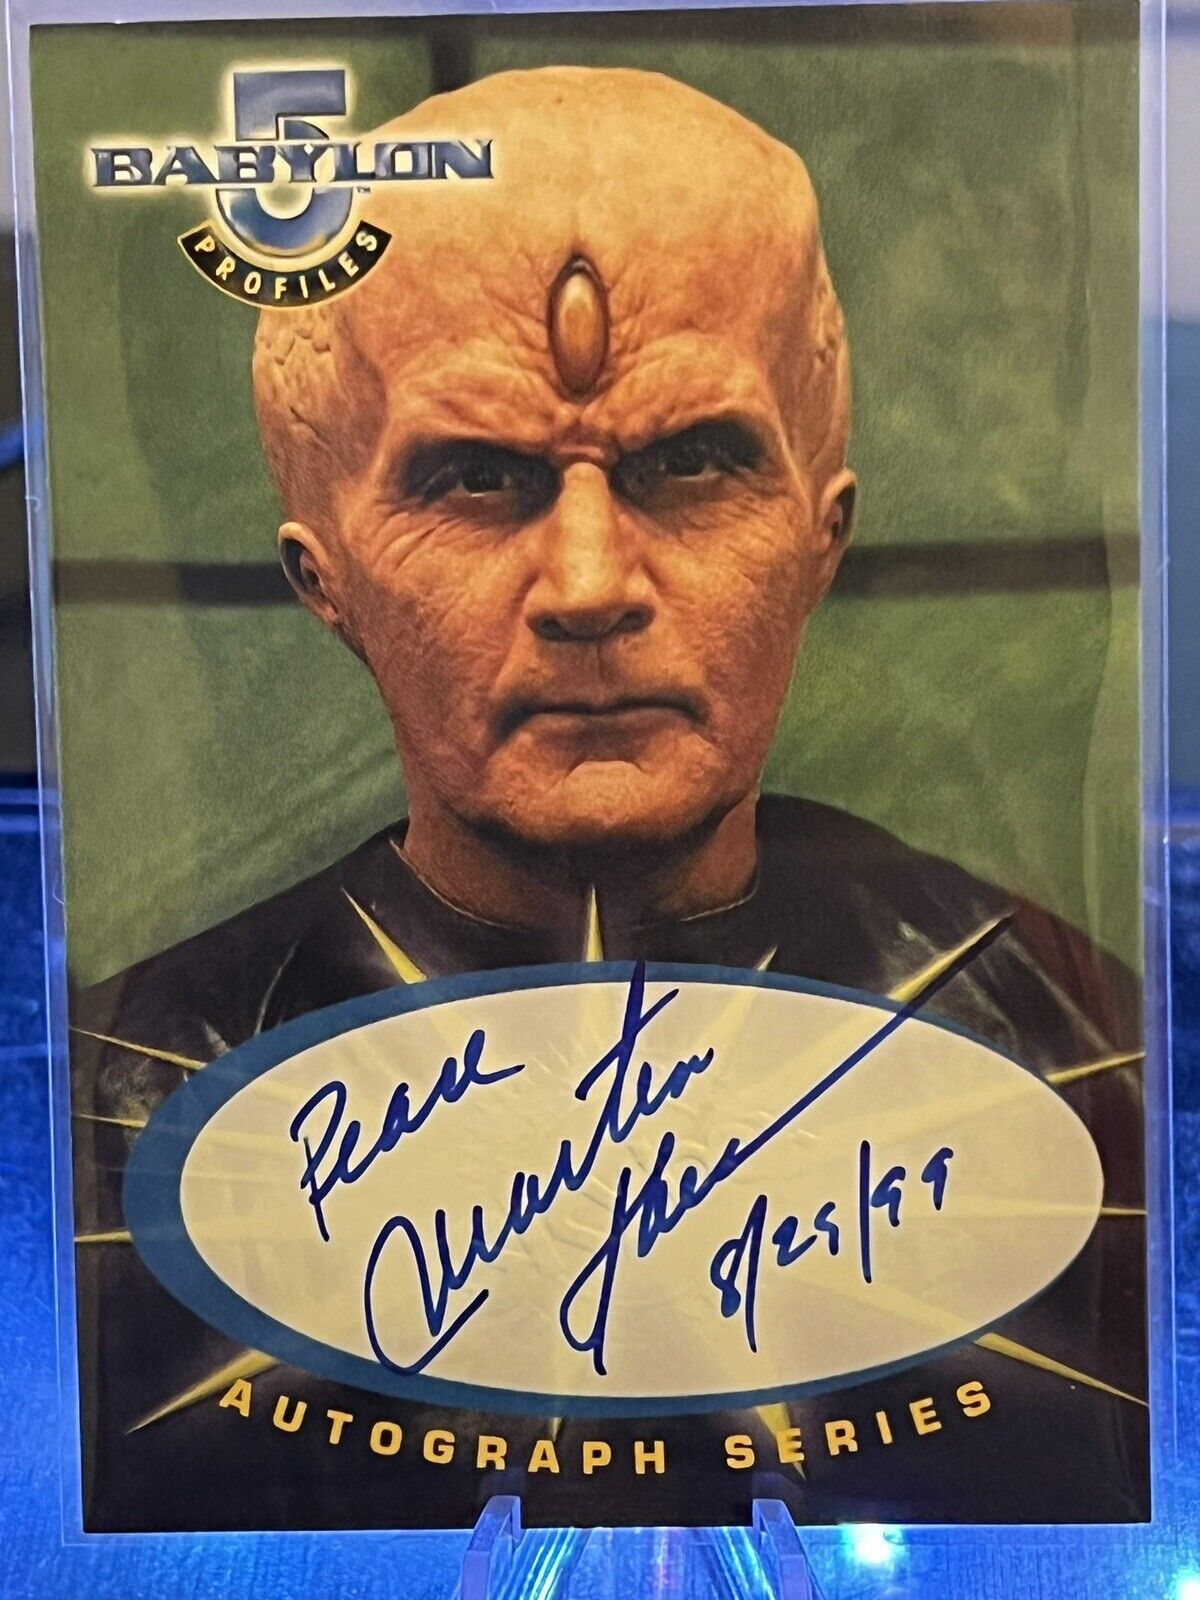 Babylon 5: Profiles Martin Sheen as Soul Hunter Autograph Card